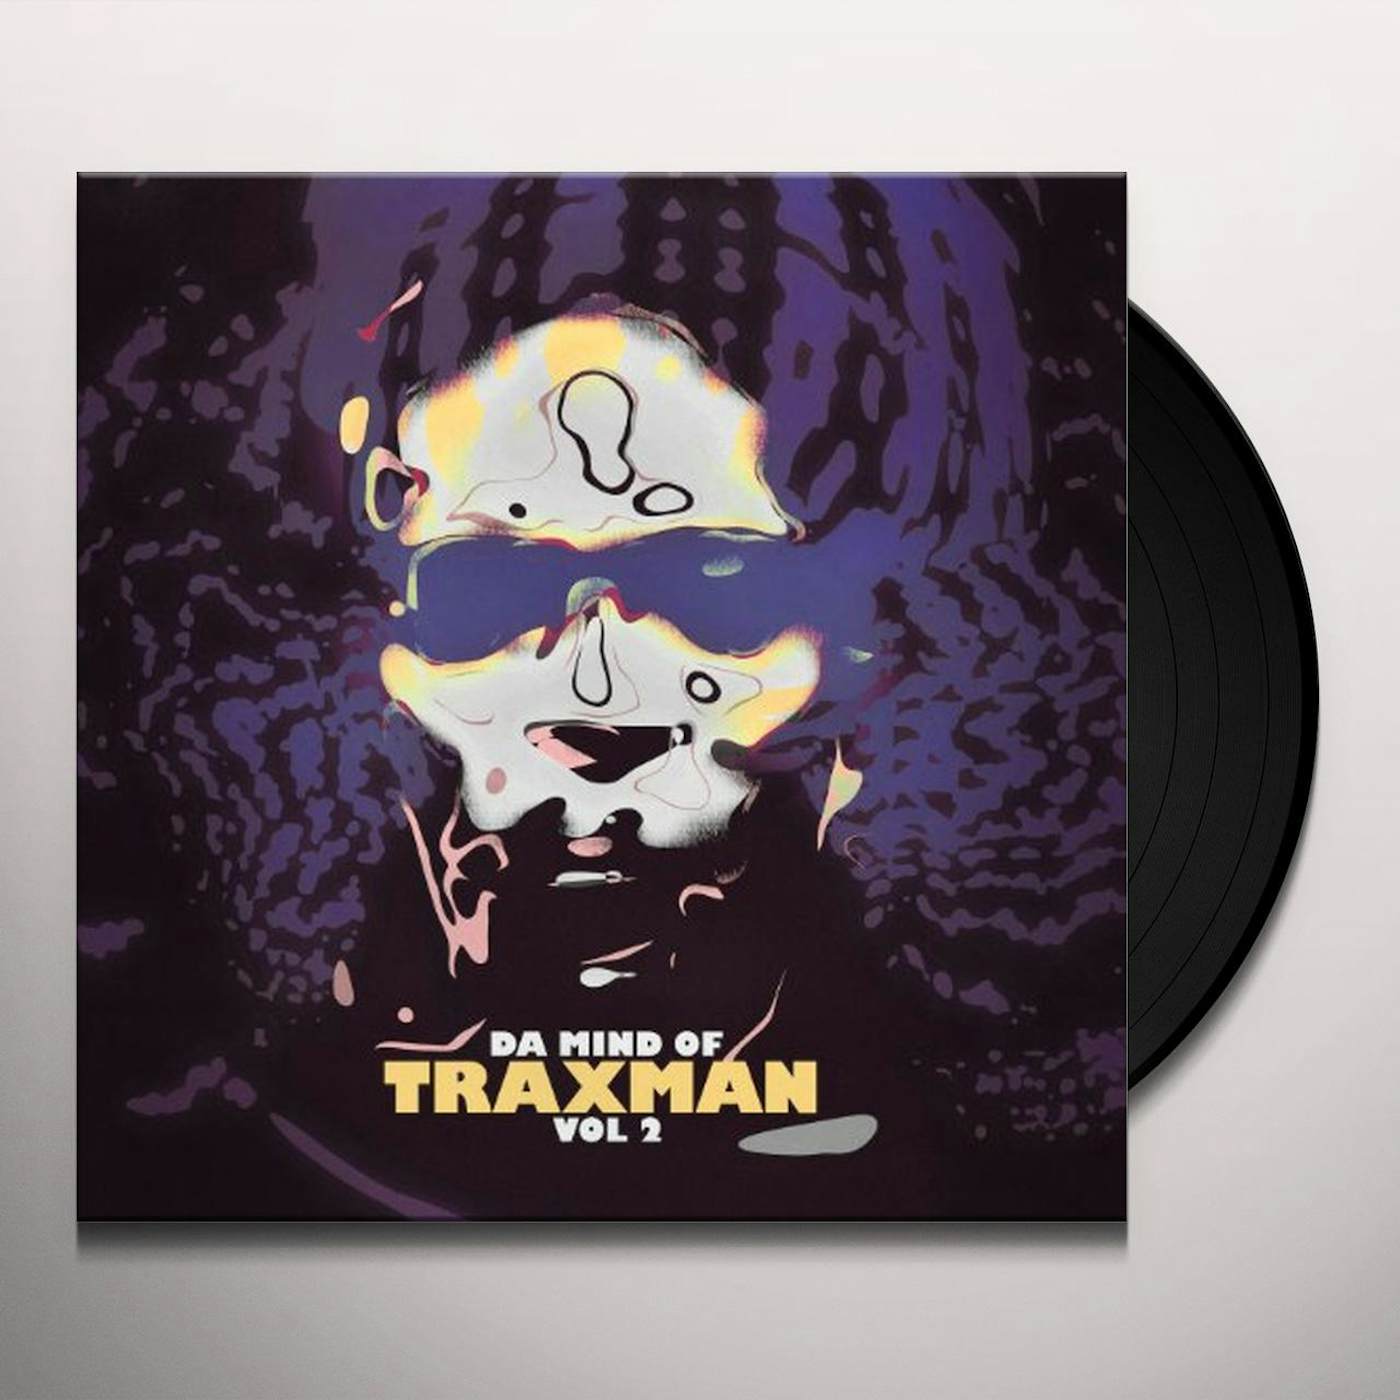 Da Mind Of Traxman Vol 2 Vinyl Record